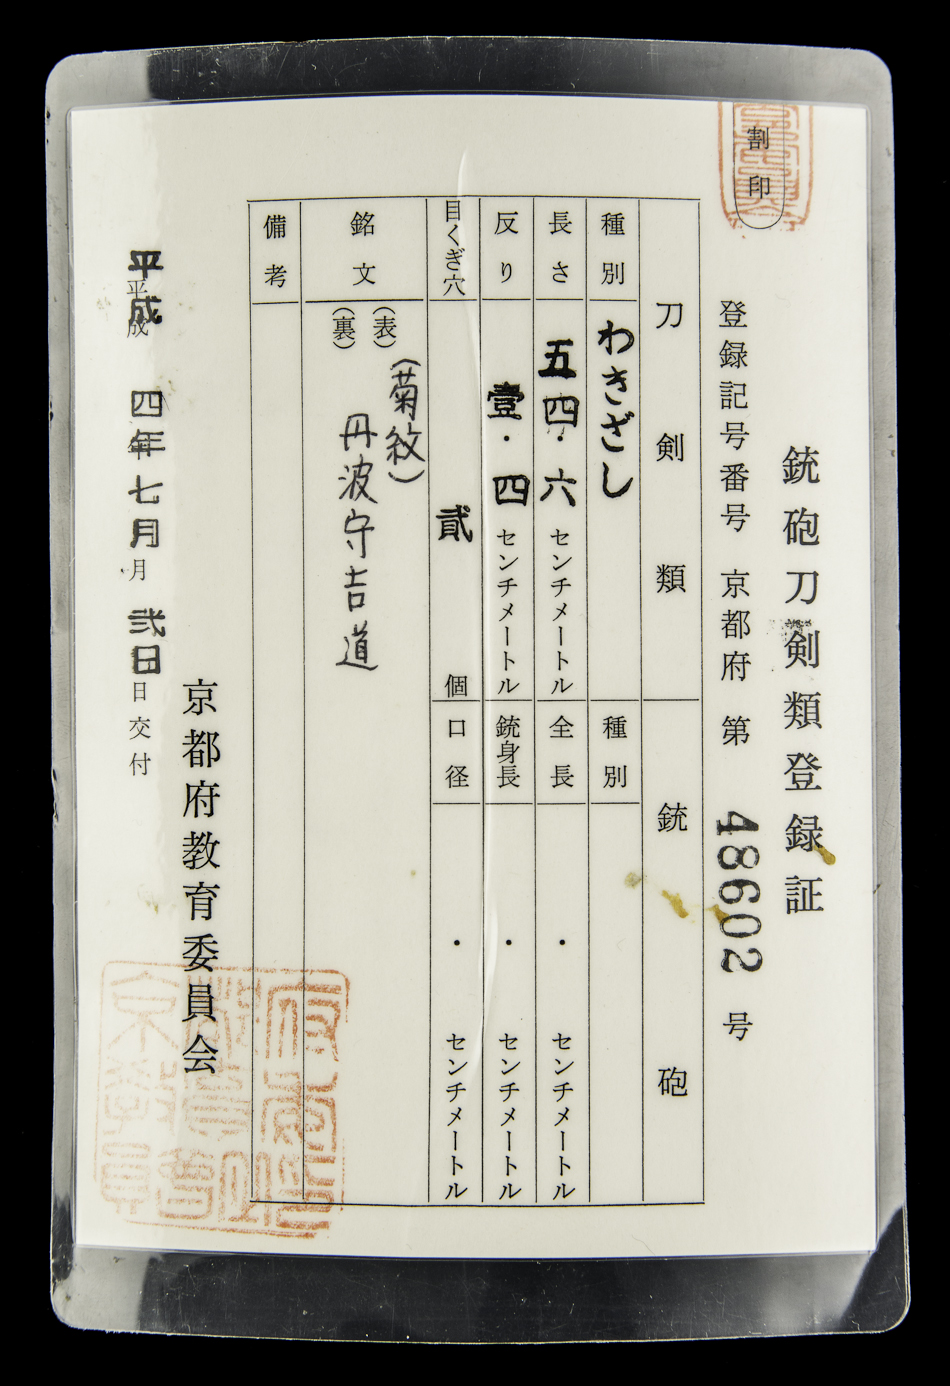 UJKA008 - A TANBA NO KAMI YOSHIMICHI WAKIZASHI (UNIQUE JAPAN)